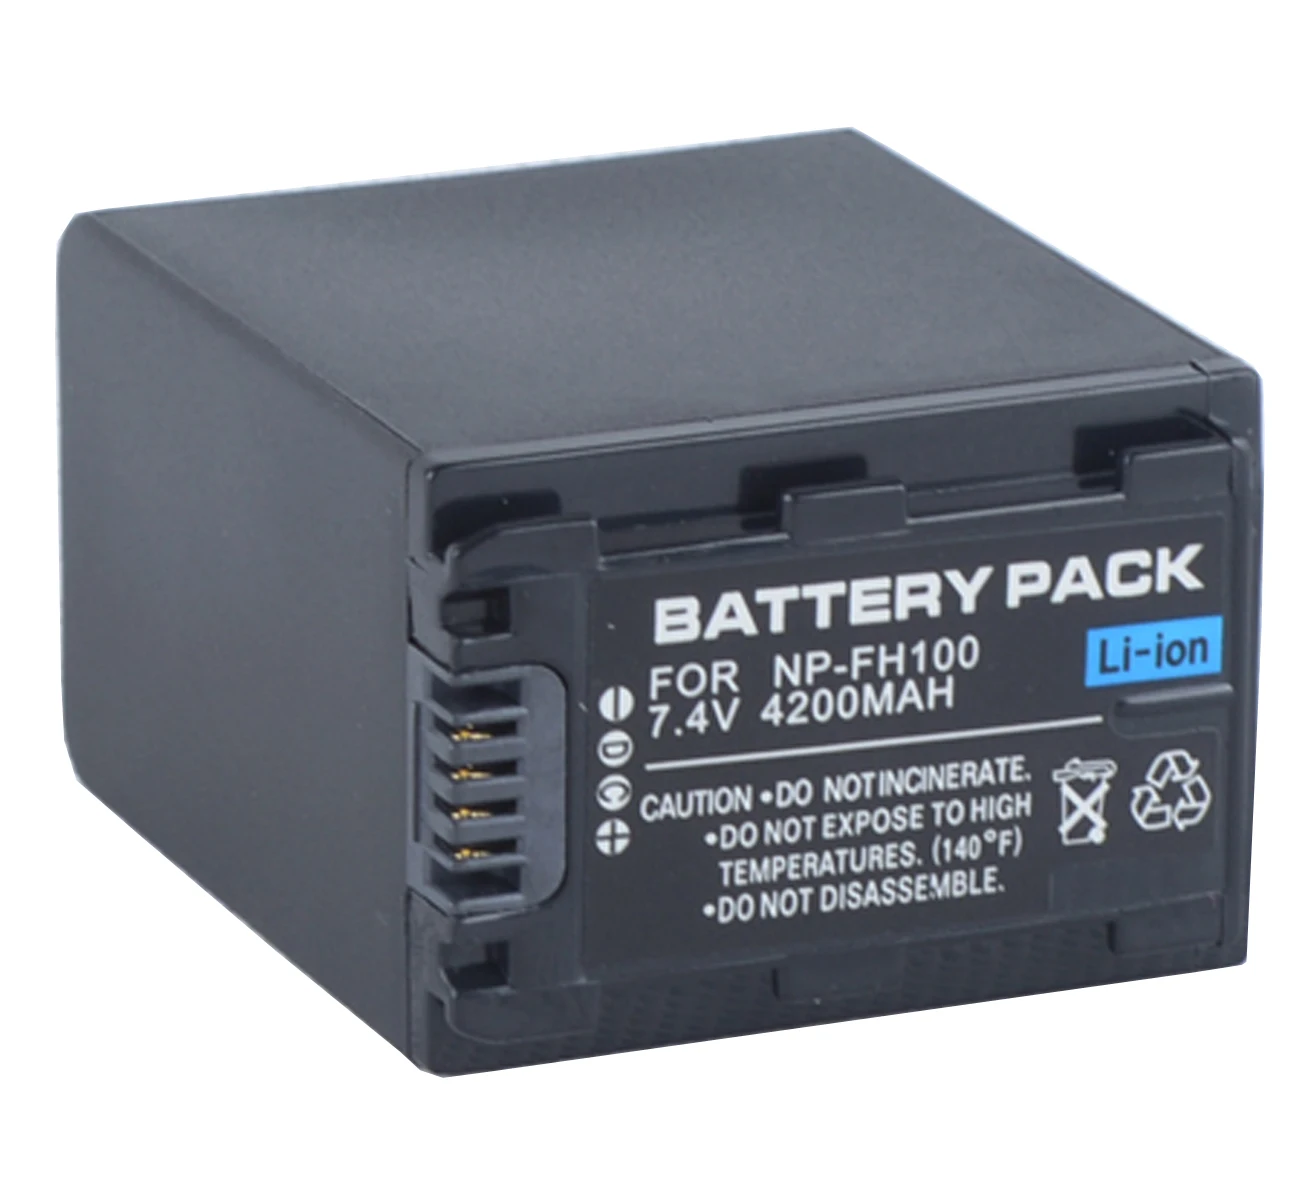 

Battery Pack for Sony DCR-HC45E, DCR-HC47E, DCR-HC48E, DCR-HC51E, DCR-HC52E, DCR-HC53E, DCR-HC54E Handycam Camcorder